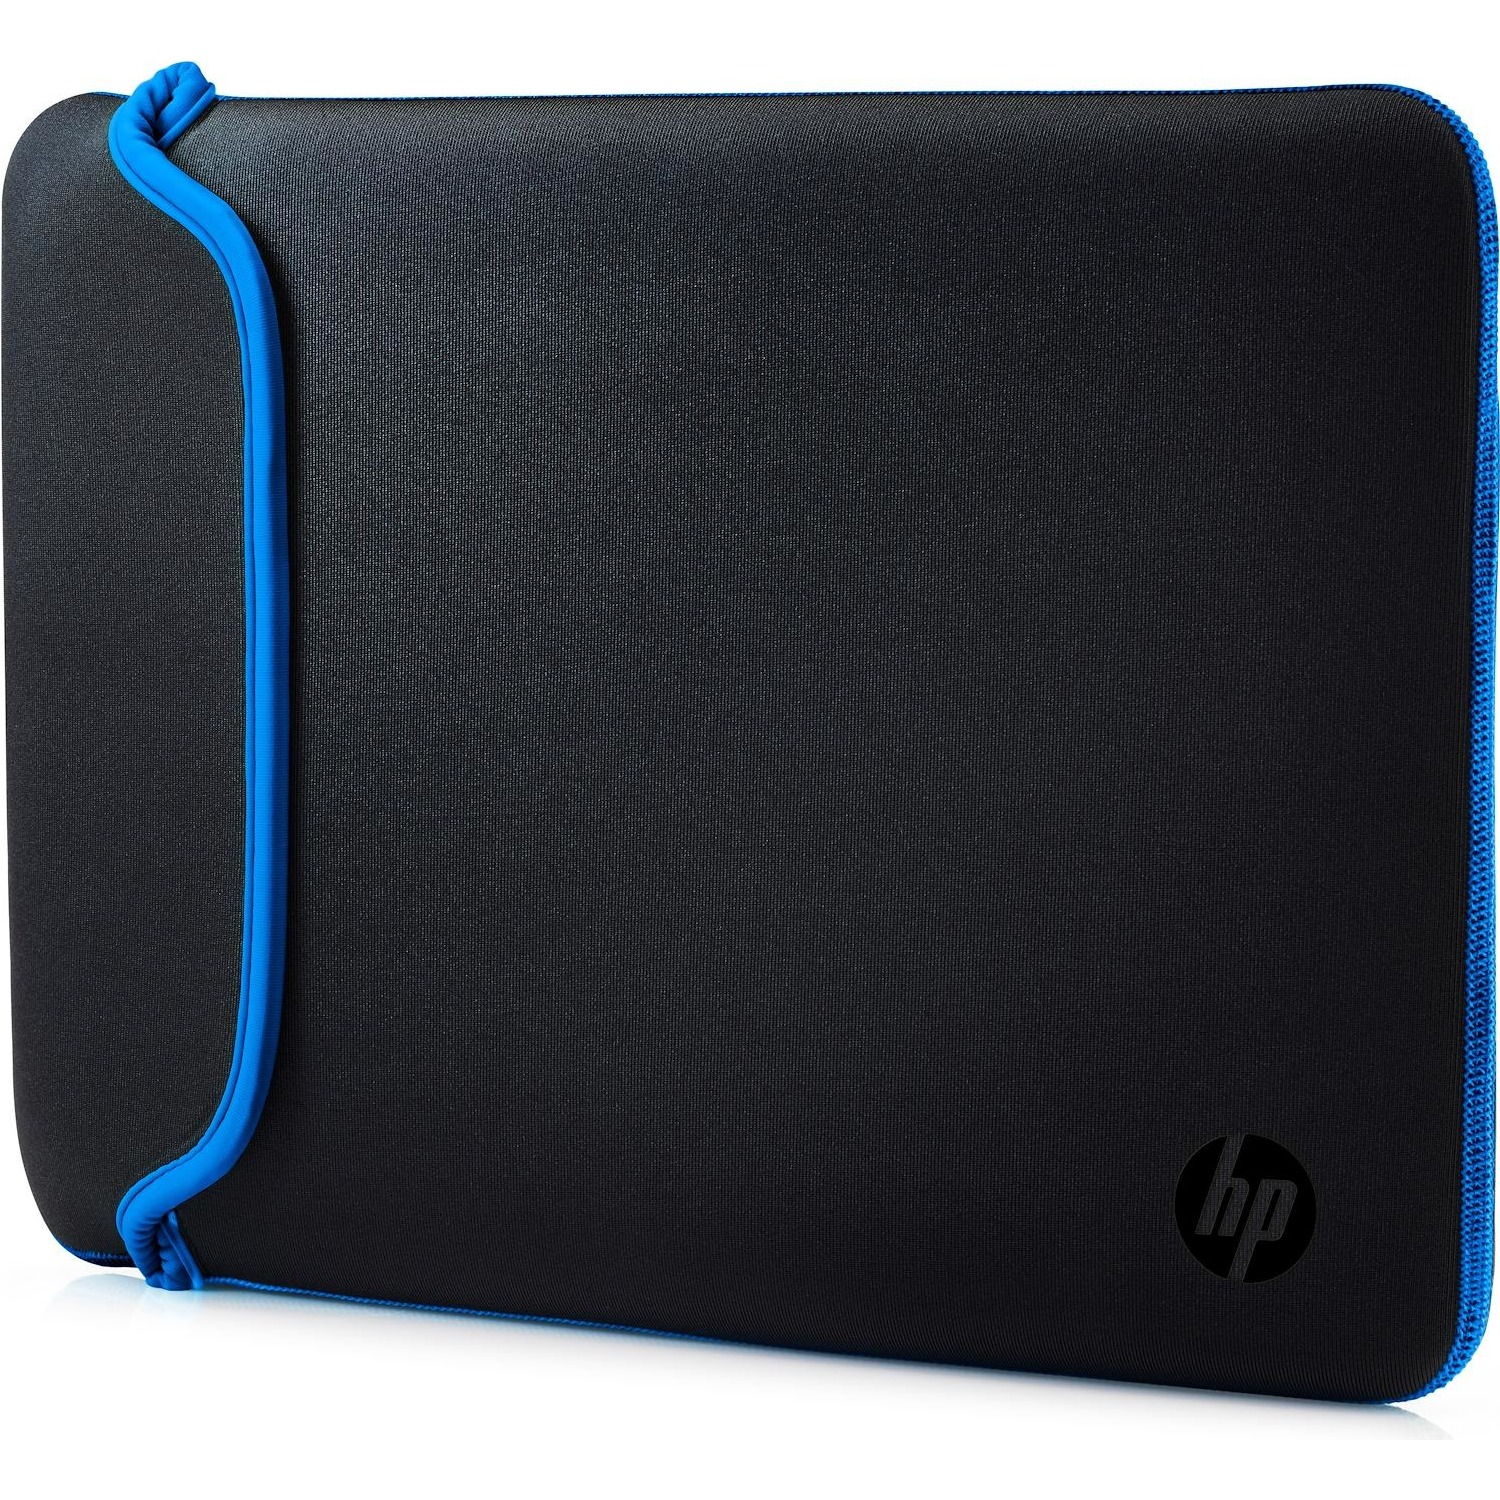 Immagine per Custodia HP per notebook 11.6" nero/blu da DIMOStore